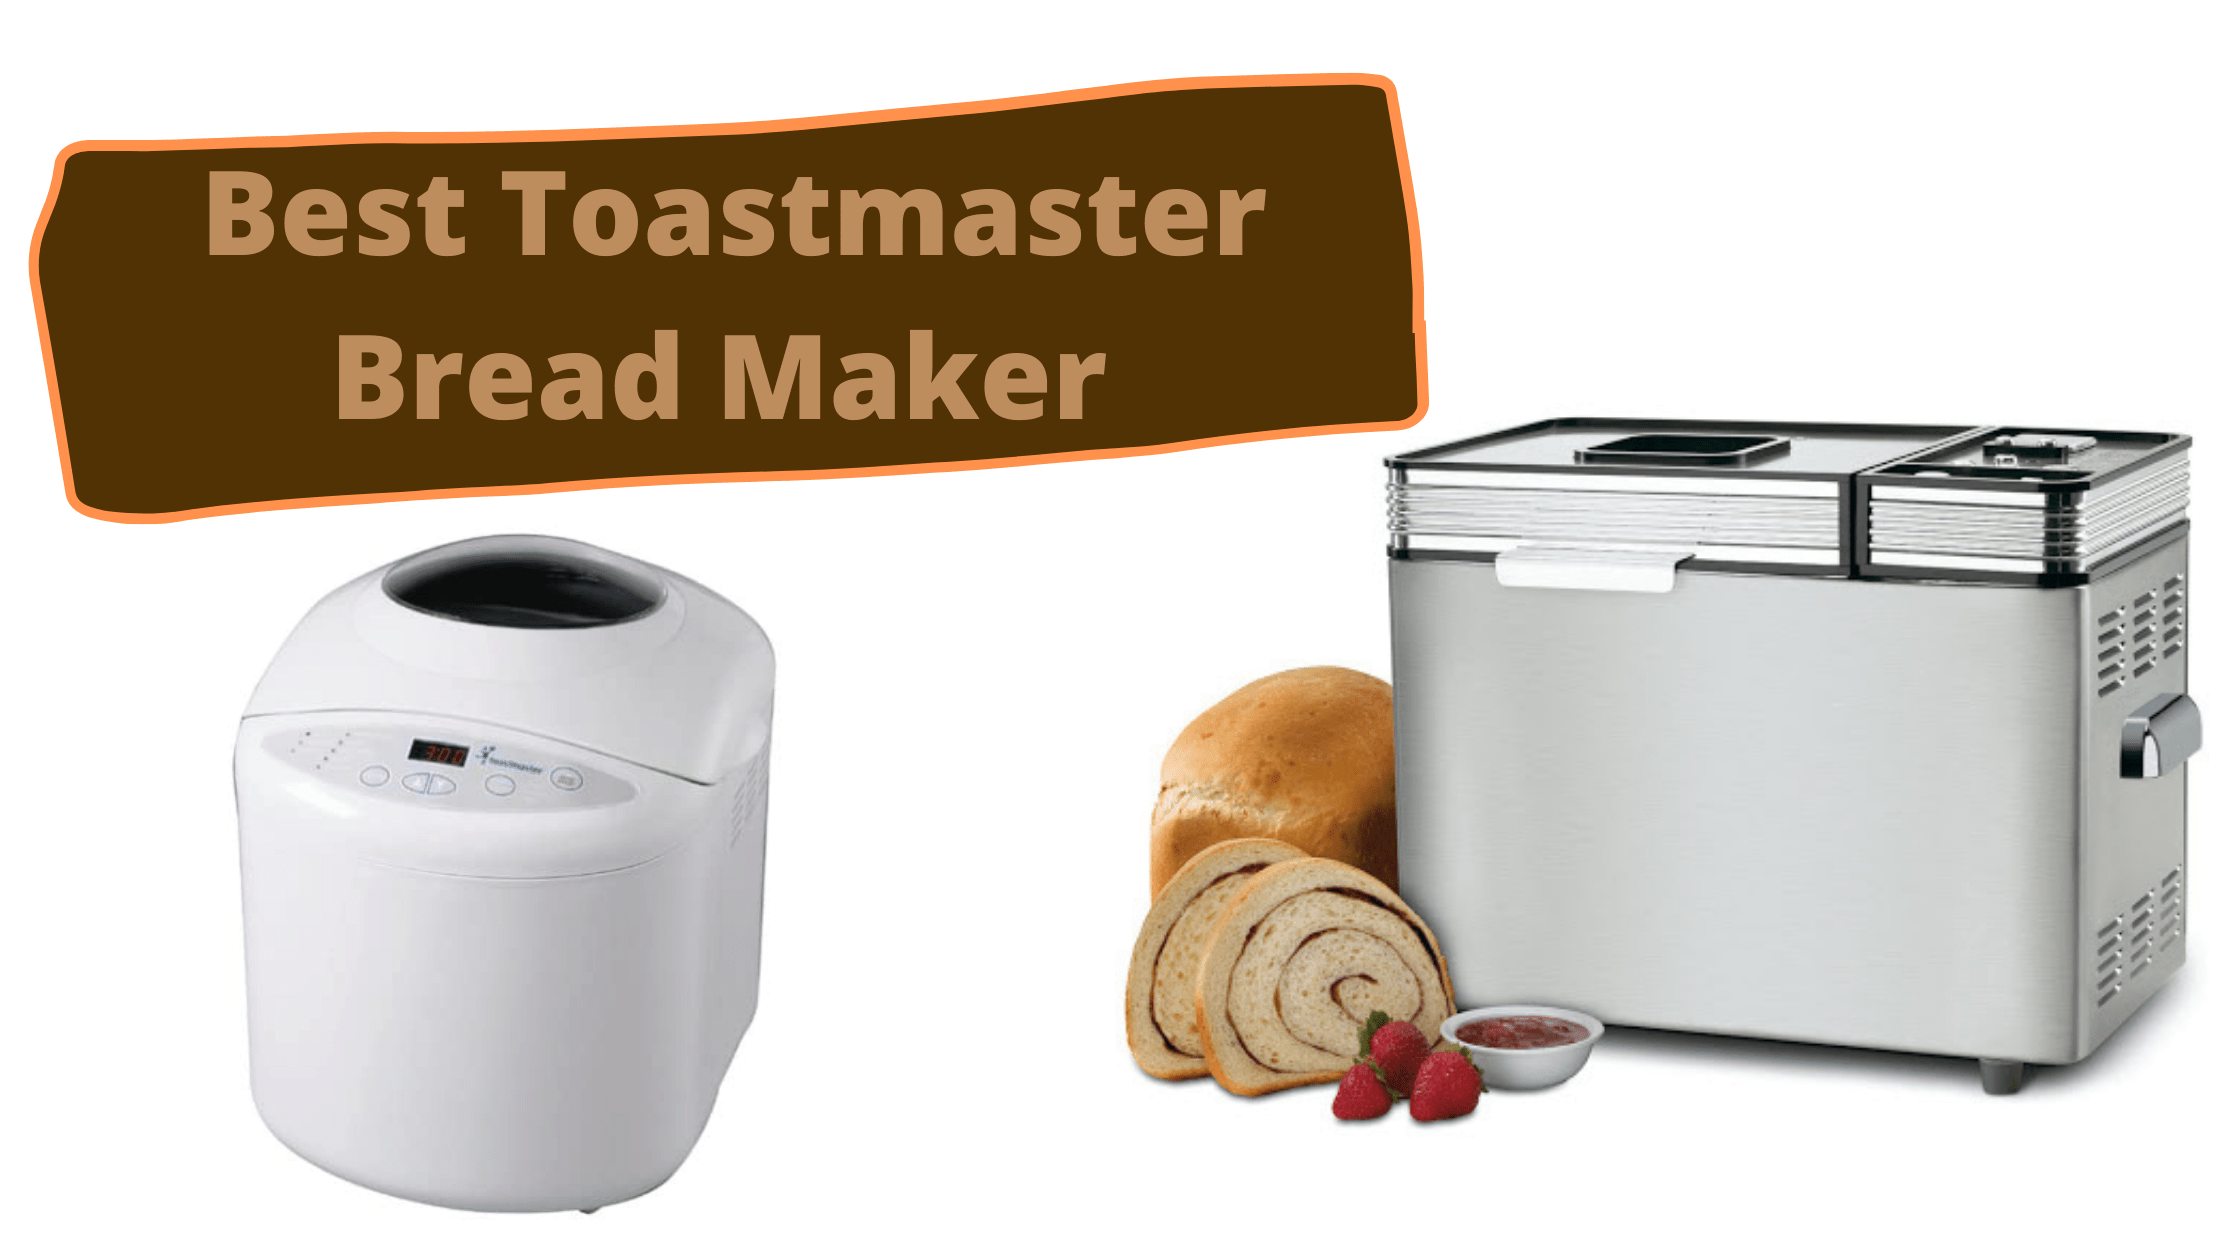 Toastmaster Bread Maker Reviews